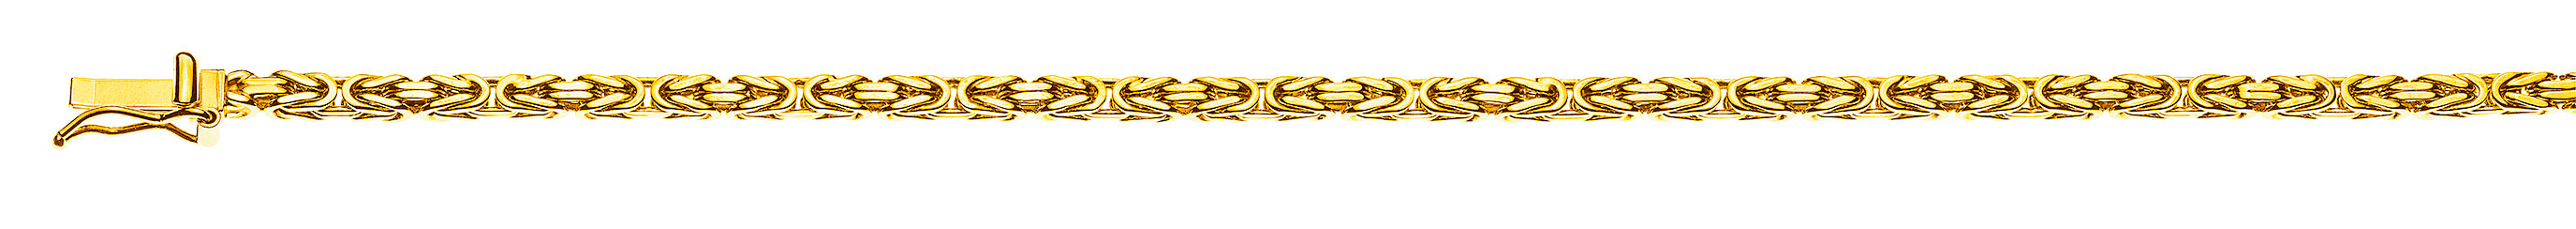 AURONOS Prestige Halskette Gelbgold 18K Königskette 45cm 2.5mm